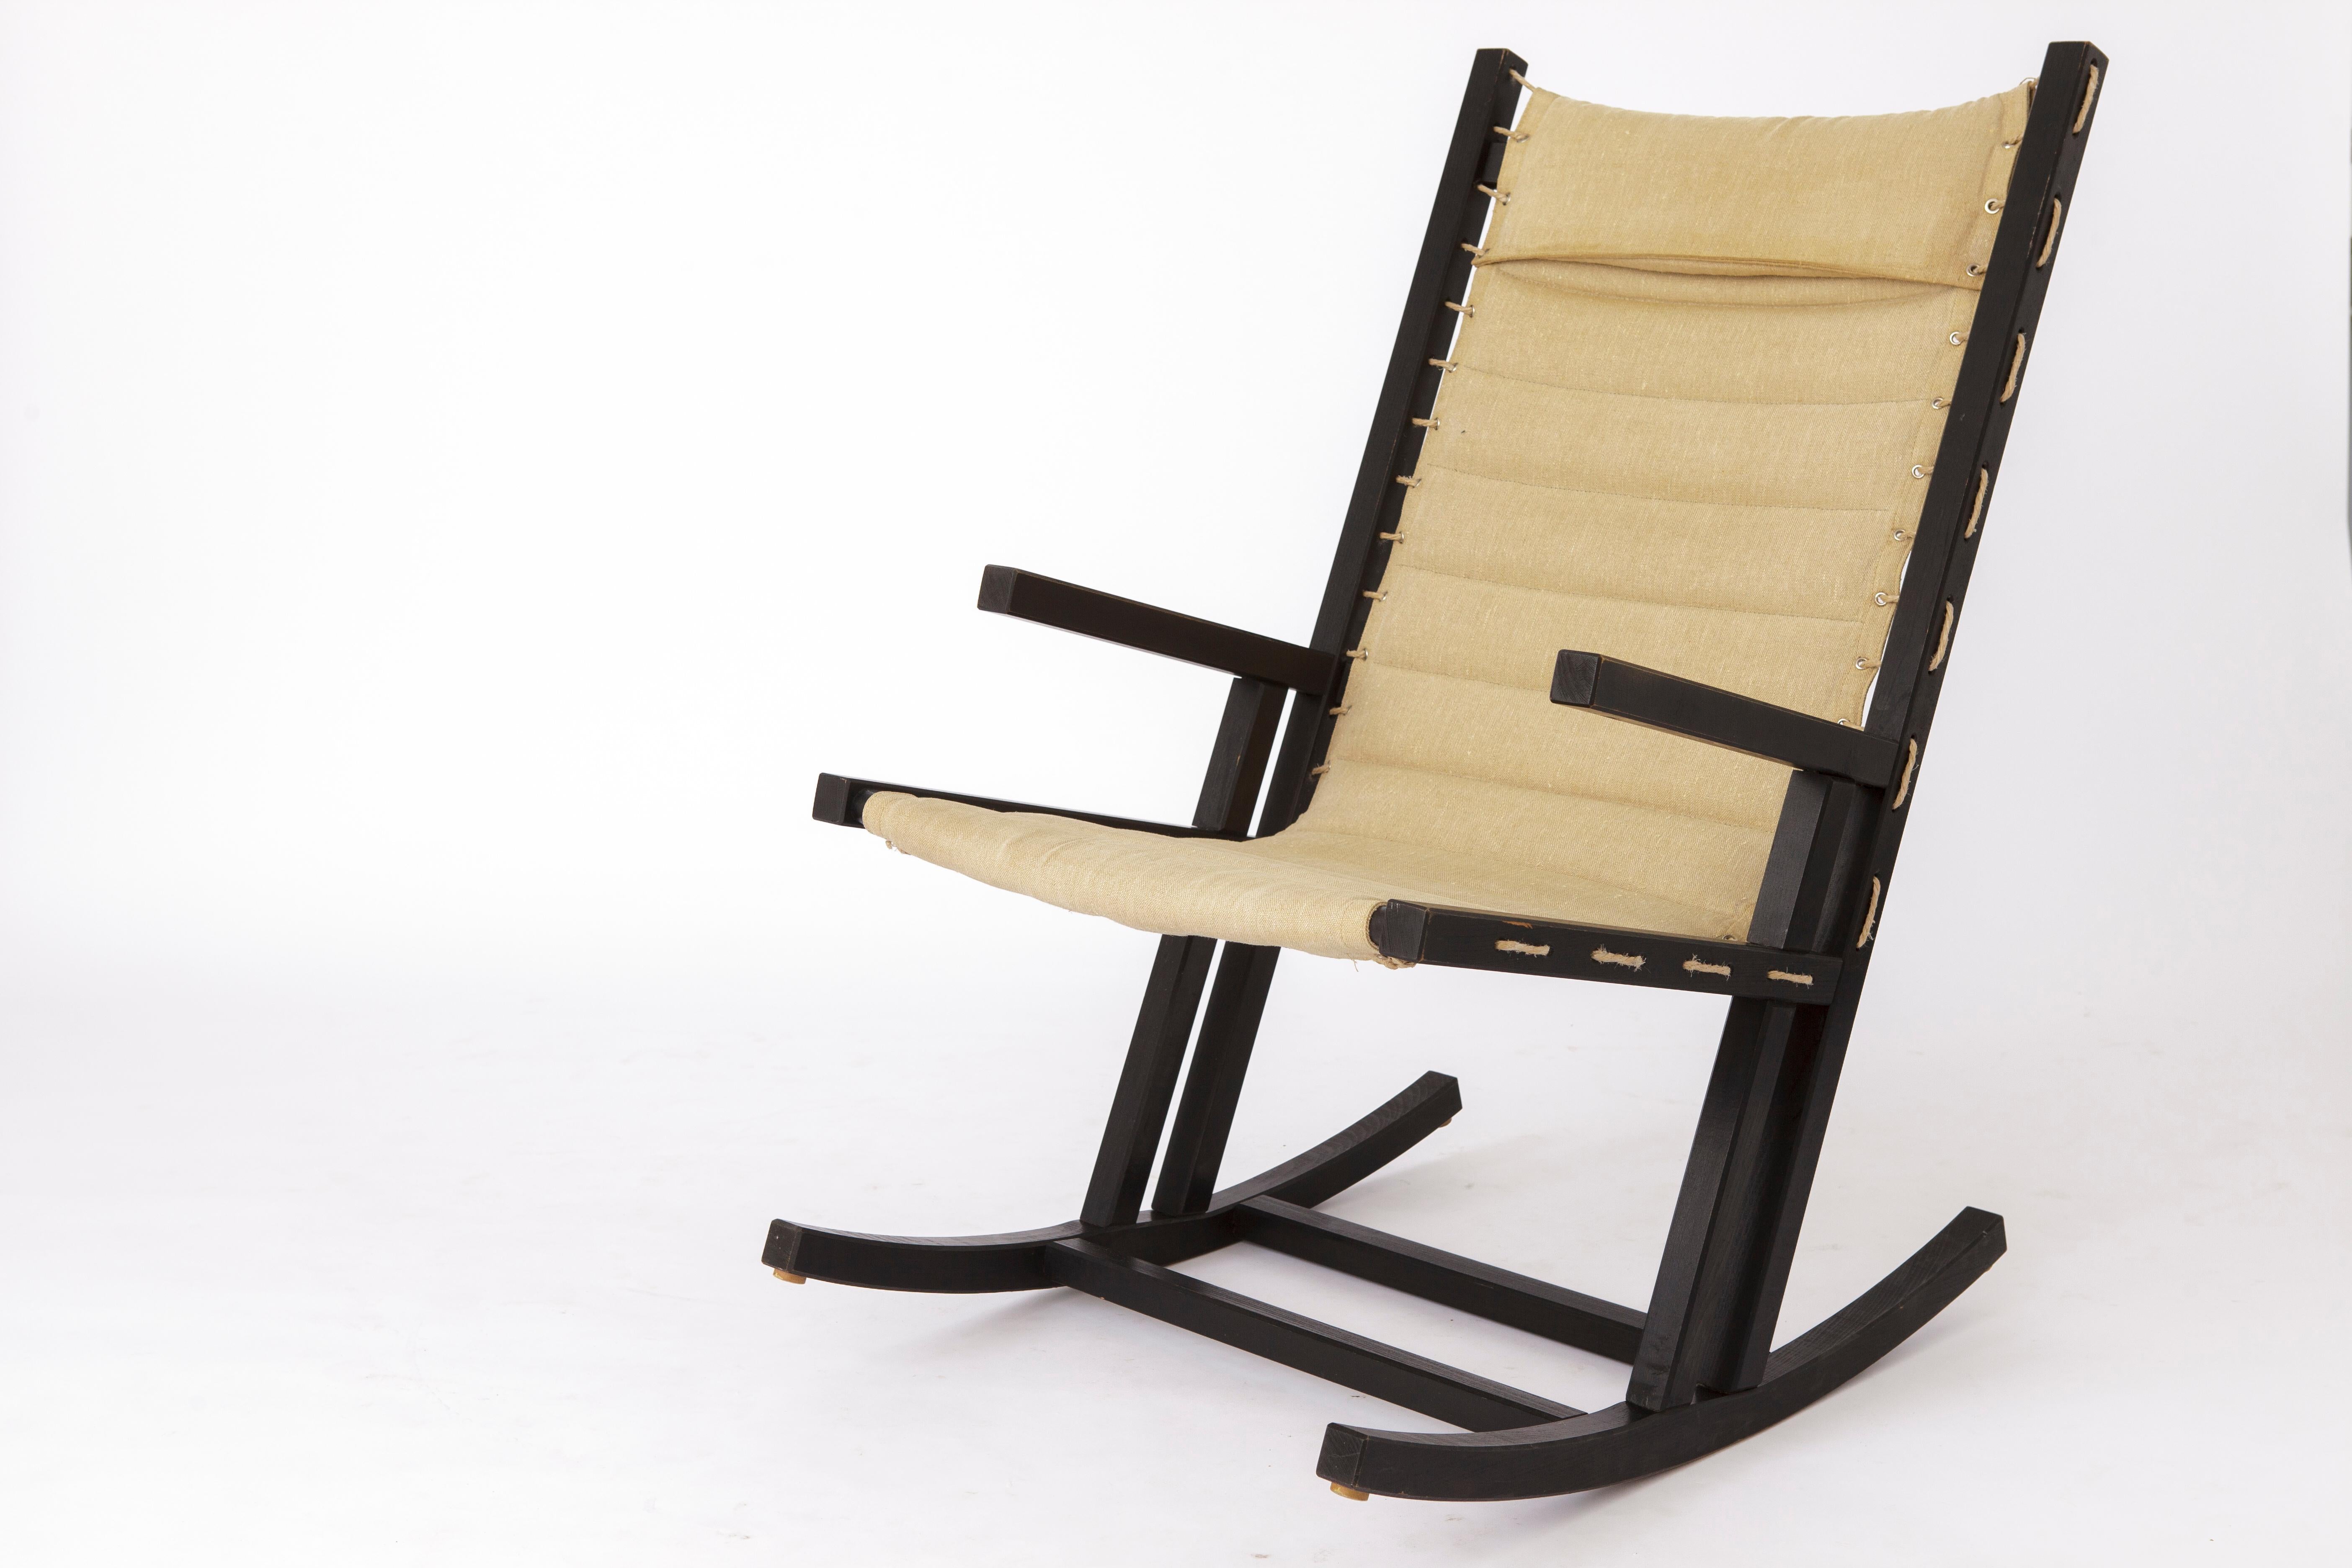 Chaise à bascule minimaliste des années 1960 avec revêtement en coton. 
Fabricant : Casala, Allemagne 

Bon état vintage. Cadre en bois de hêtre peint en noir, en bon état. 
Pas de joints lâches. Un support solide. Pas de grincement.
La housse en